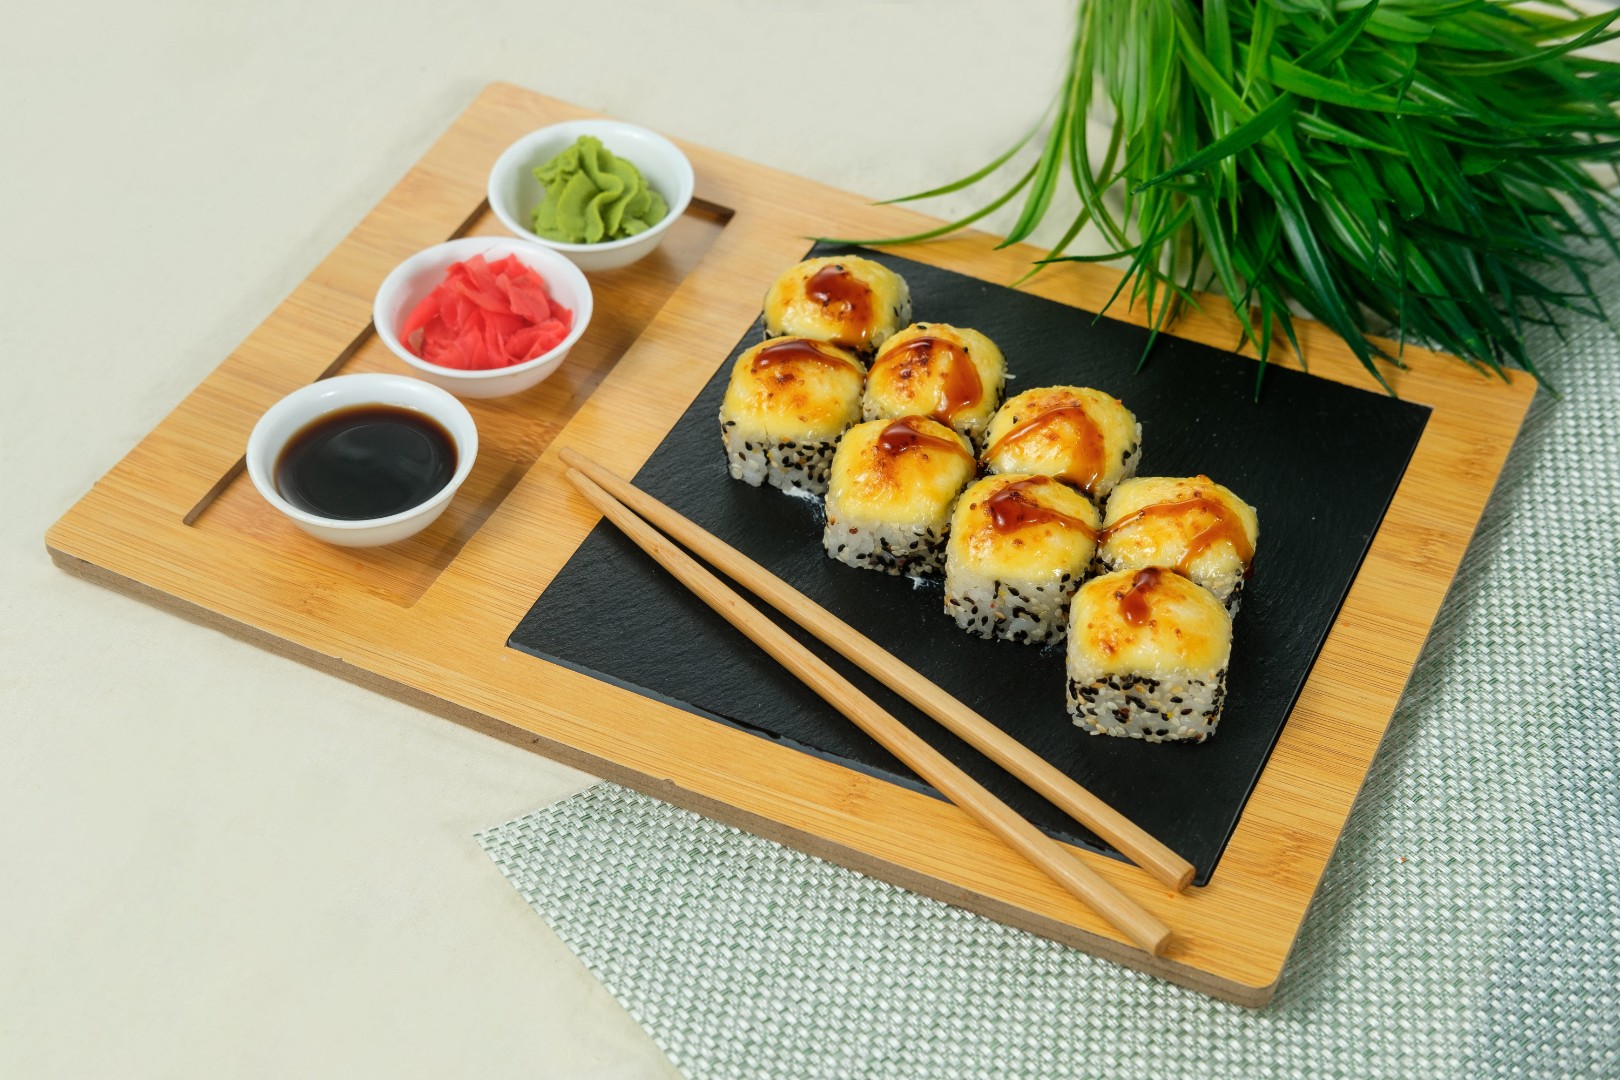 Заказать суши в краснодаре с бесплатной доставкой тануки фото 54